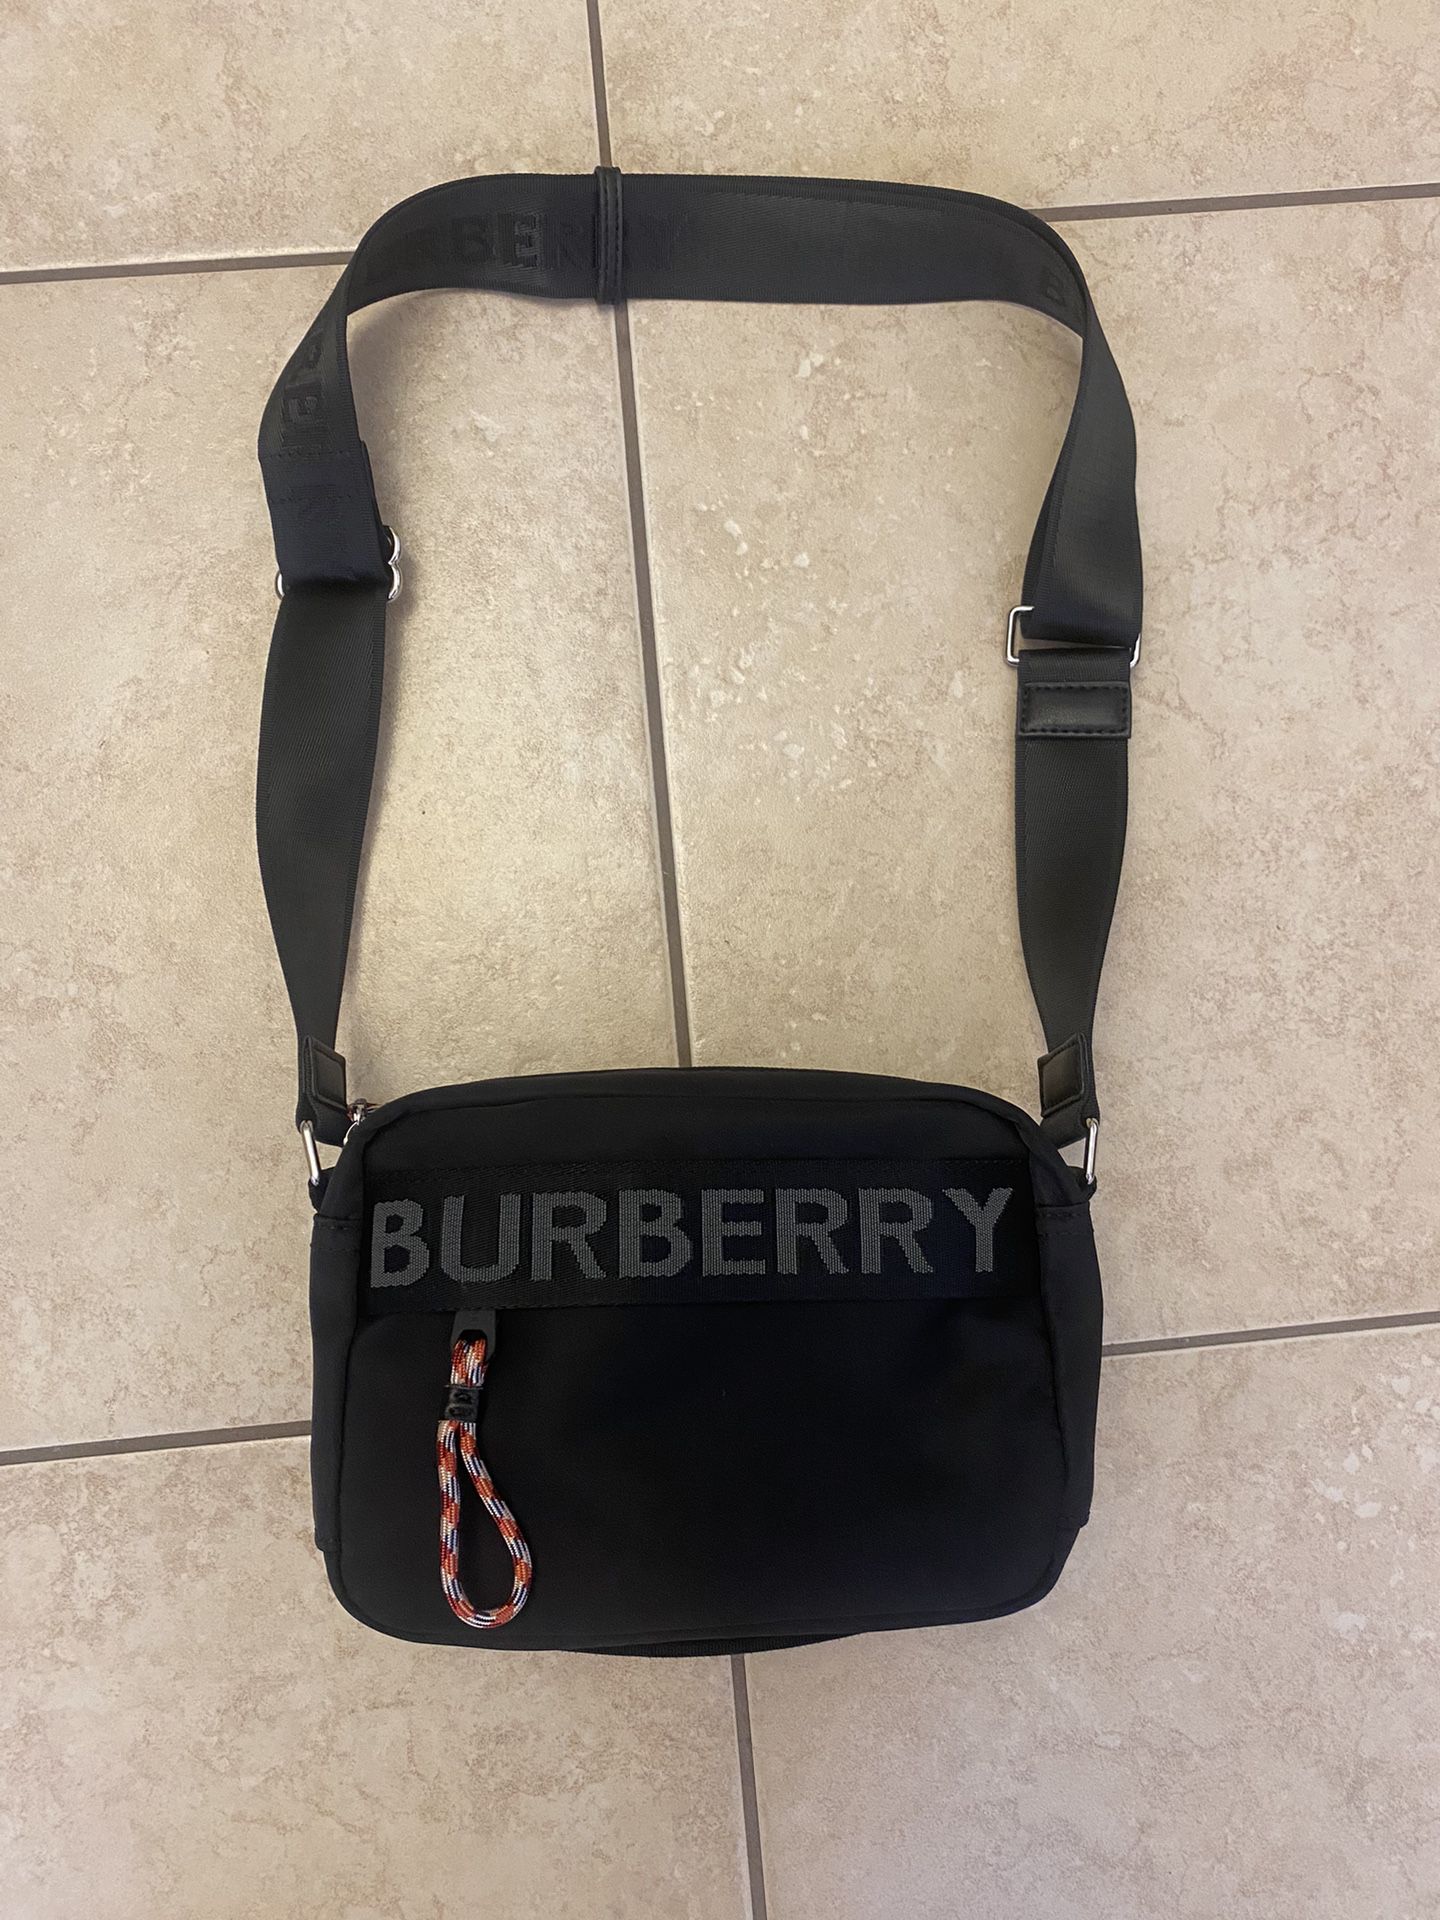 Burberry Econyl Bag